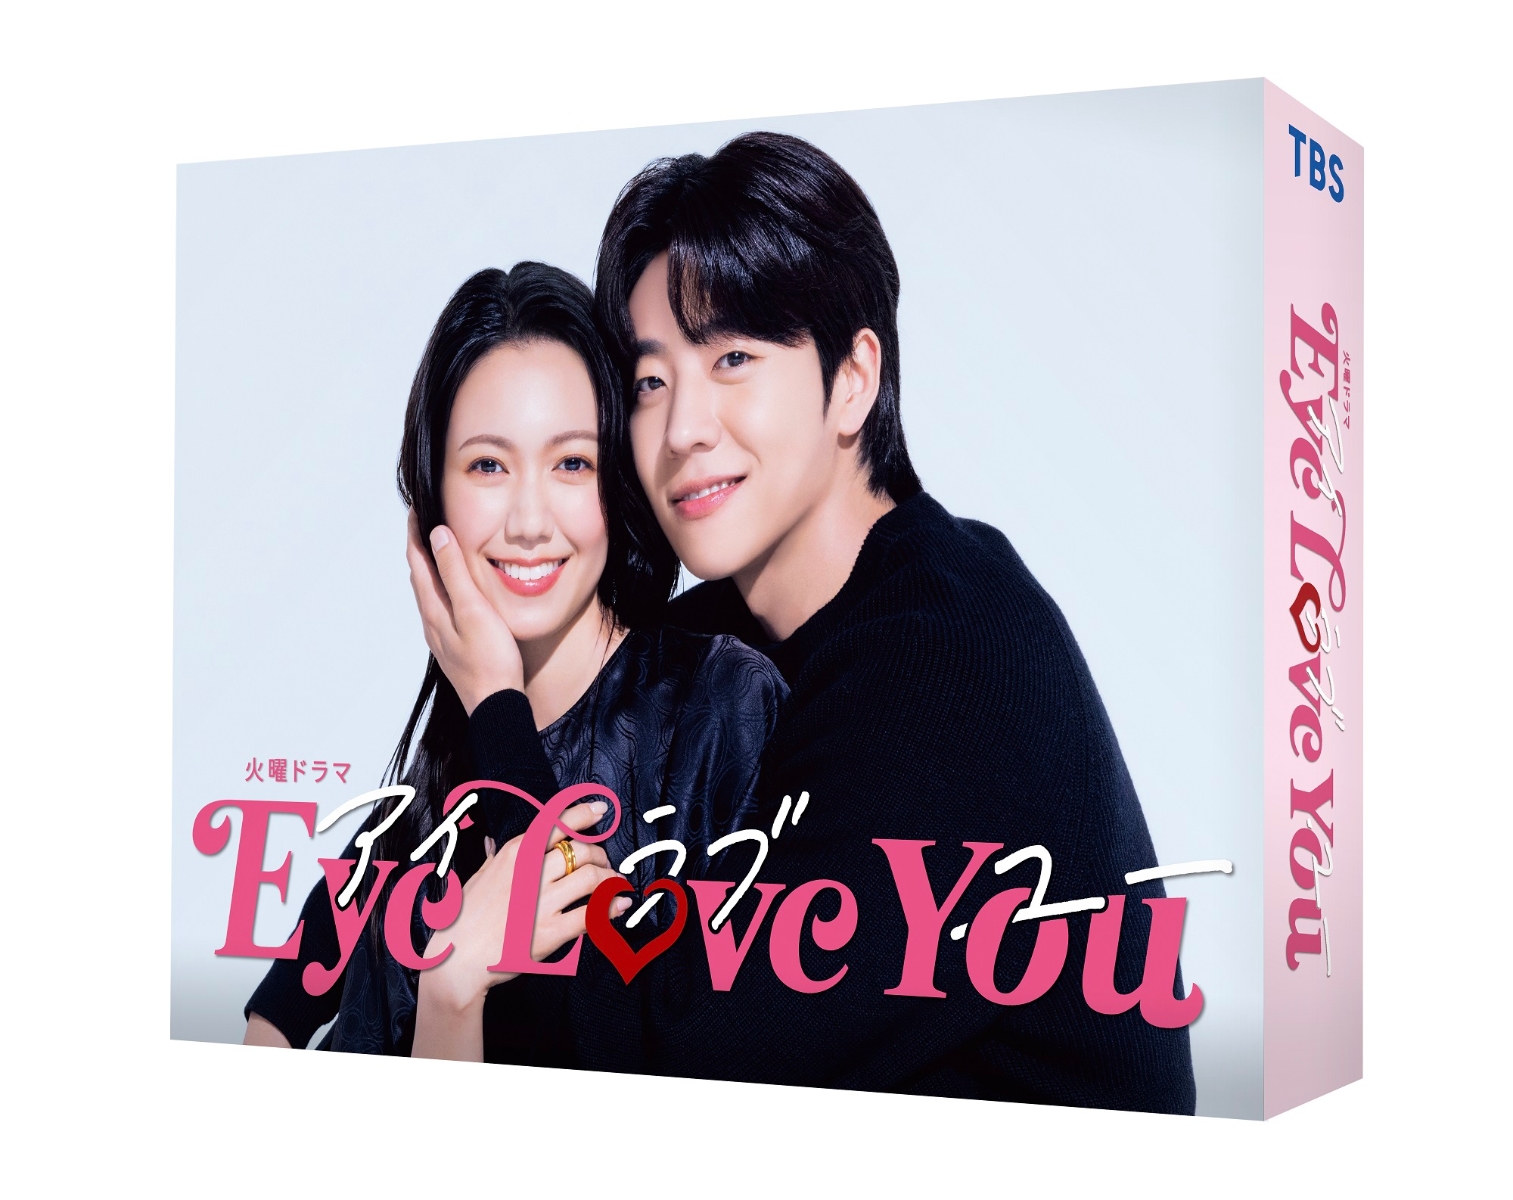 楽天ブックス: Eye Love You DVD-BOX - 二階堂ふみ - 4571519926281 : DVD